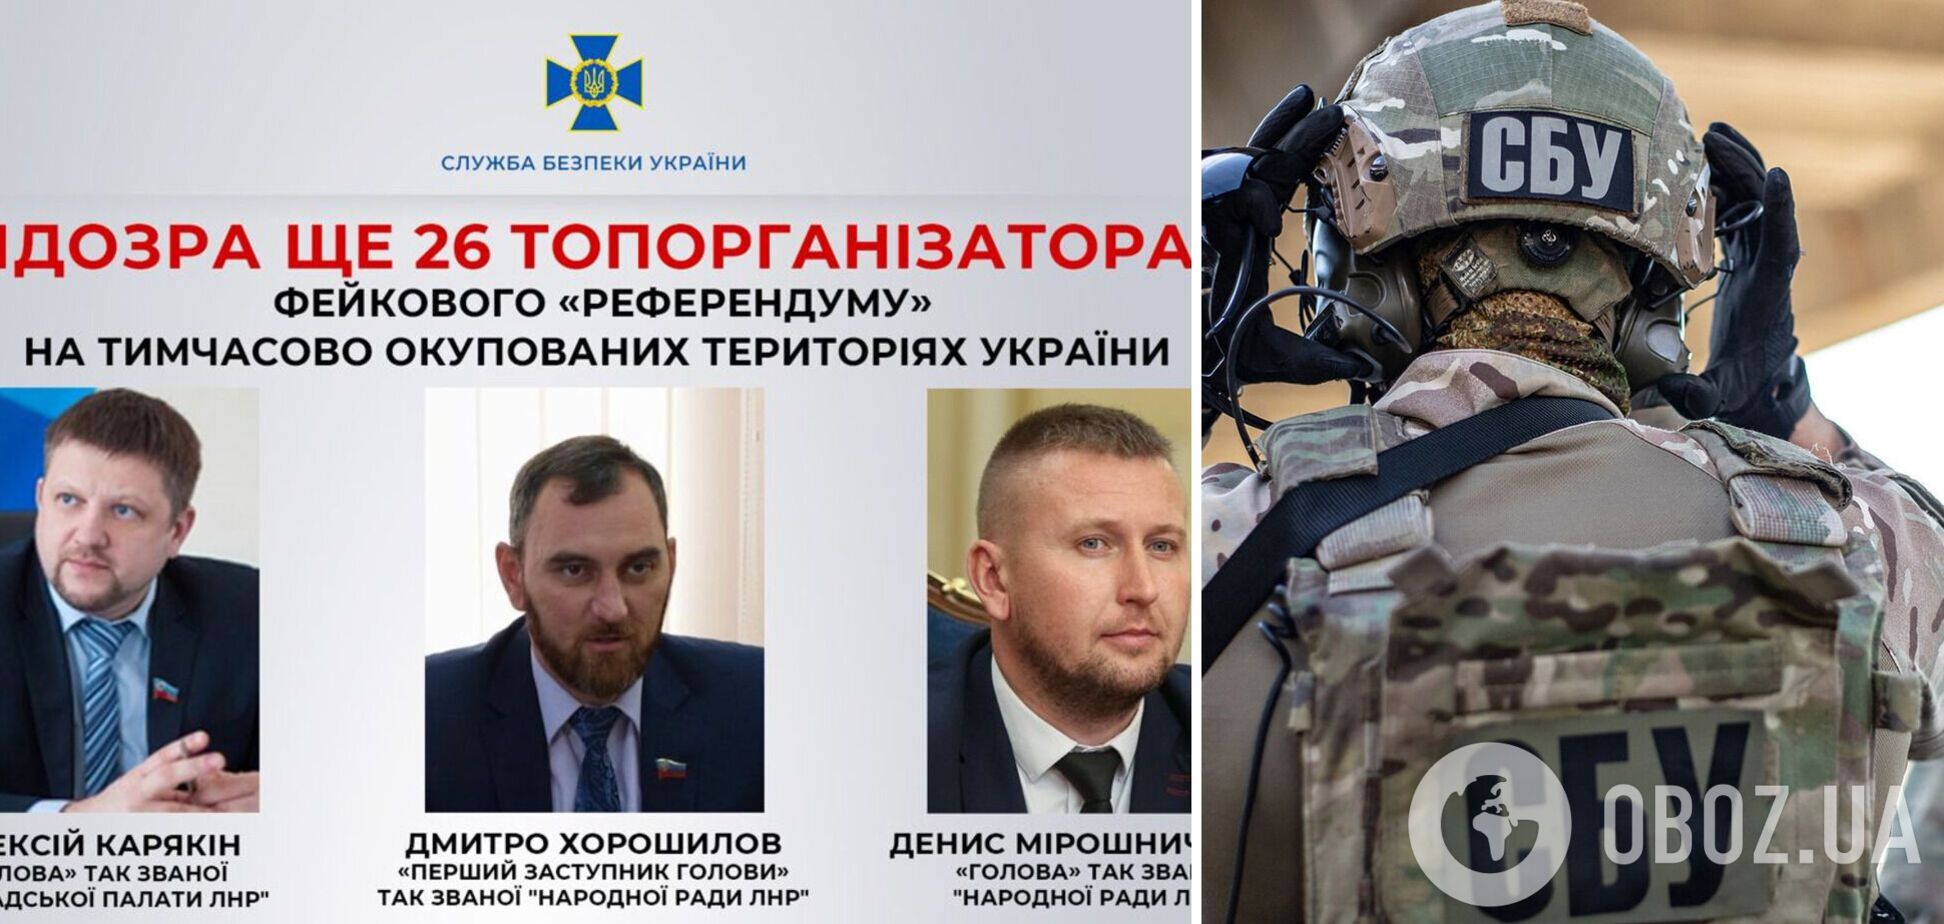 СБУ сообщила о подозрении еще 26 организаторам путинского 'референдума' на оккупированных территориях. Фото